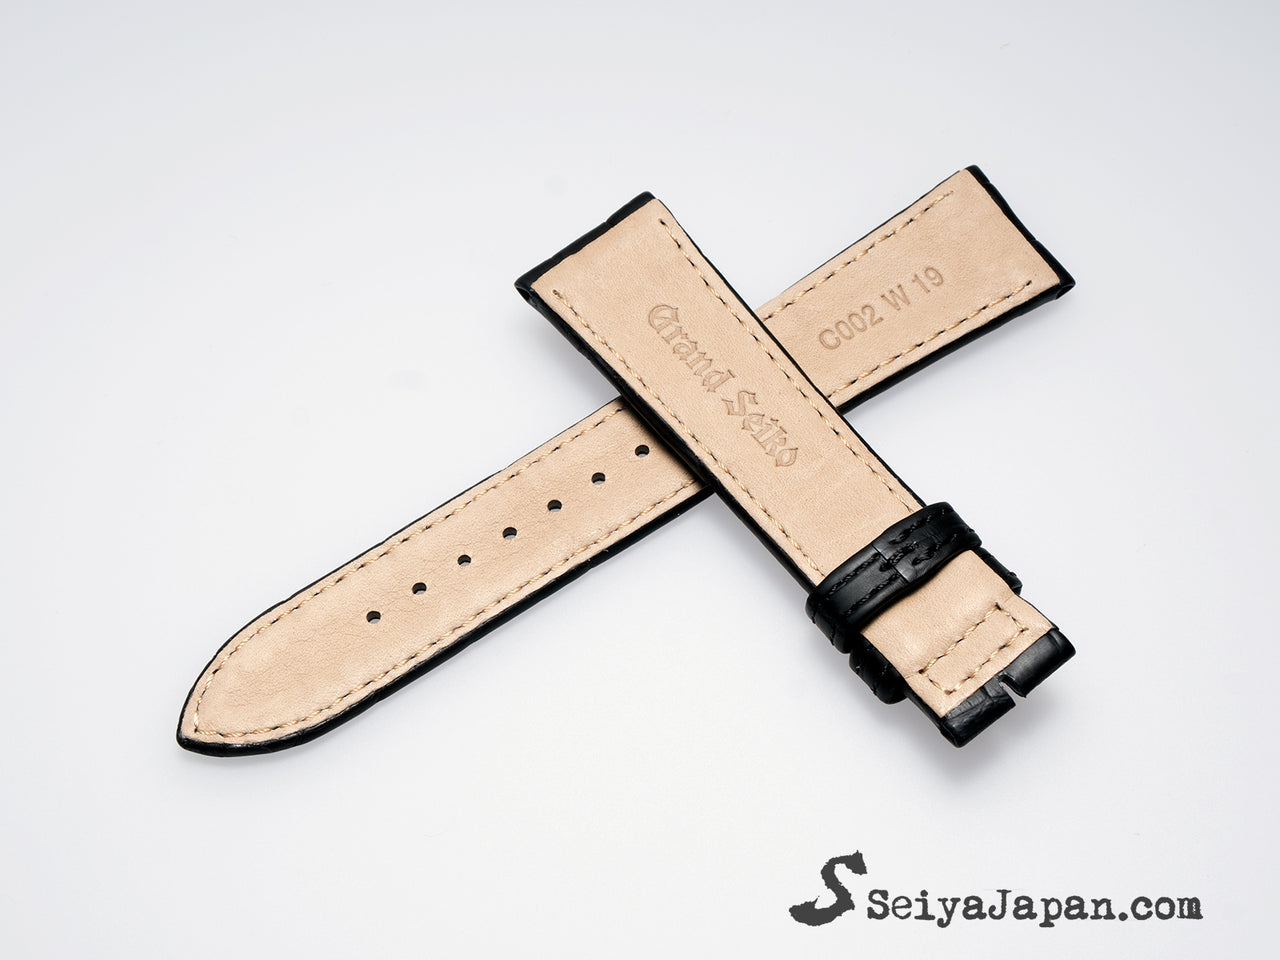 GRAND SEIKO Original strap Black-19mm-for Buckle/ GS19_C002012J9